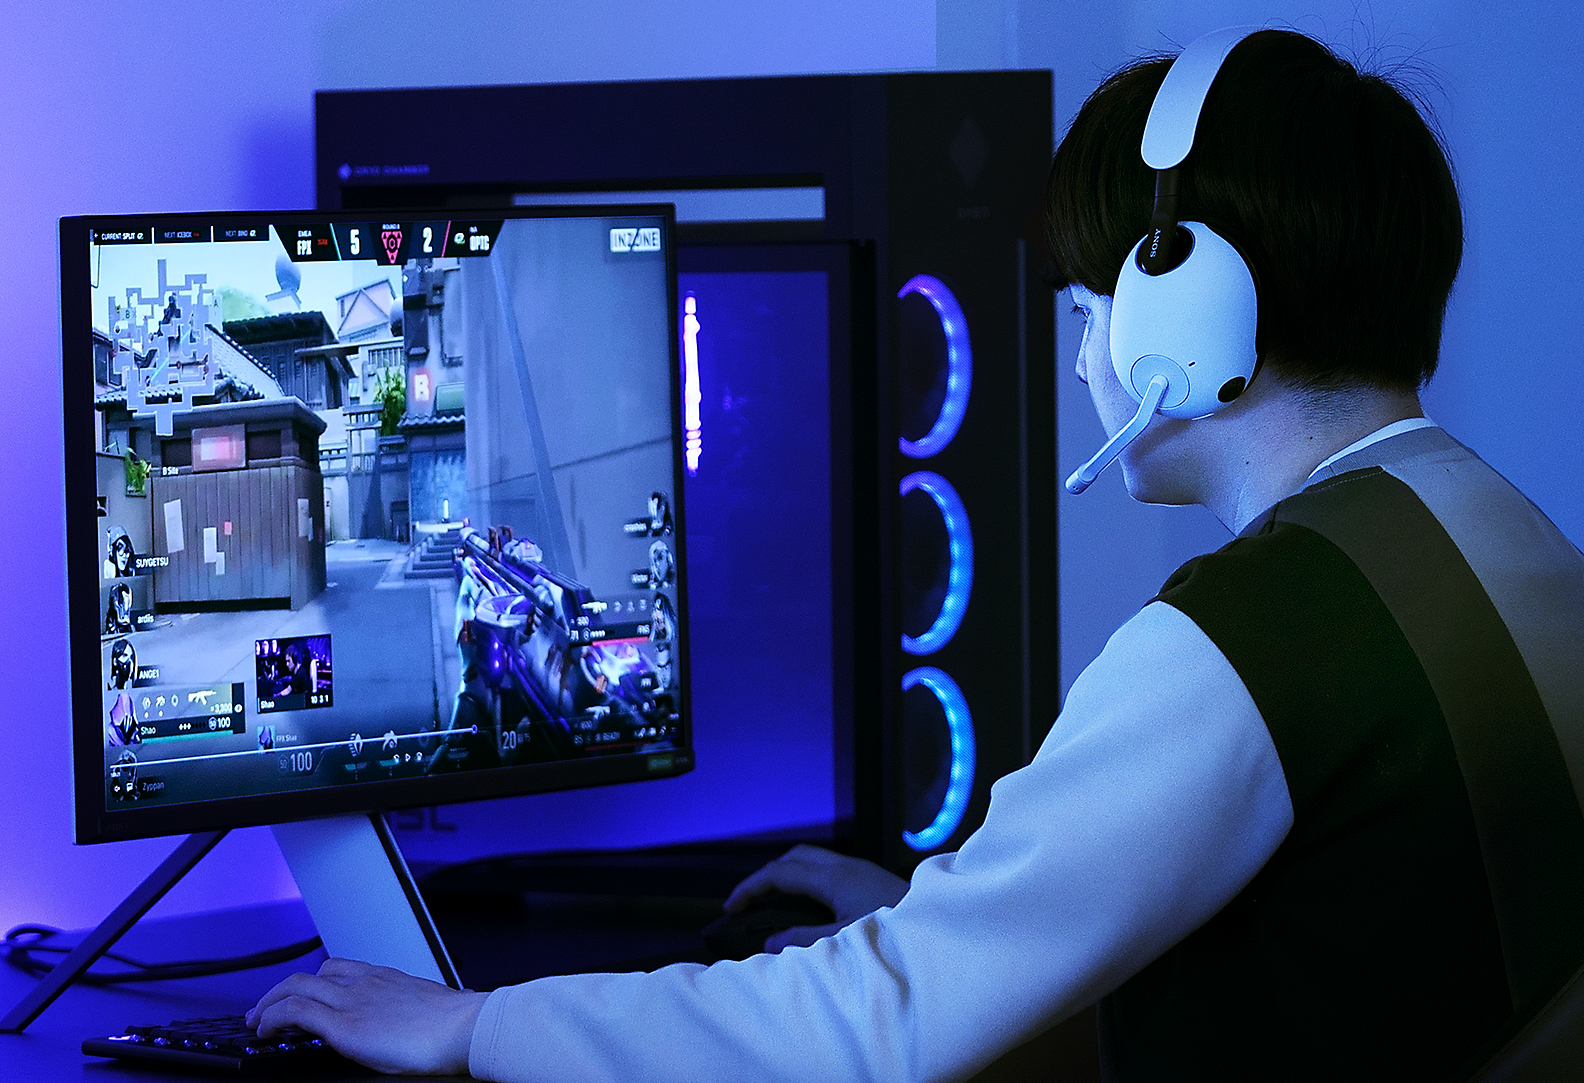 صورة رجل في غرفة بإضاءة بنفسجية يلعب VALORANT على كمبيوتر وهو يرتدي سماعات الرأس الخاصة باللعب INZONE H9